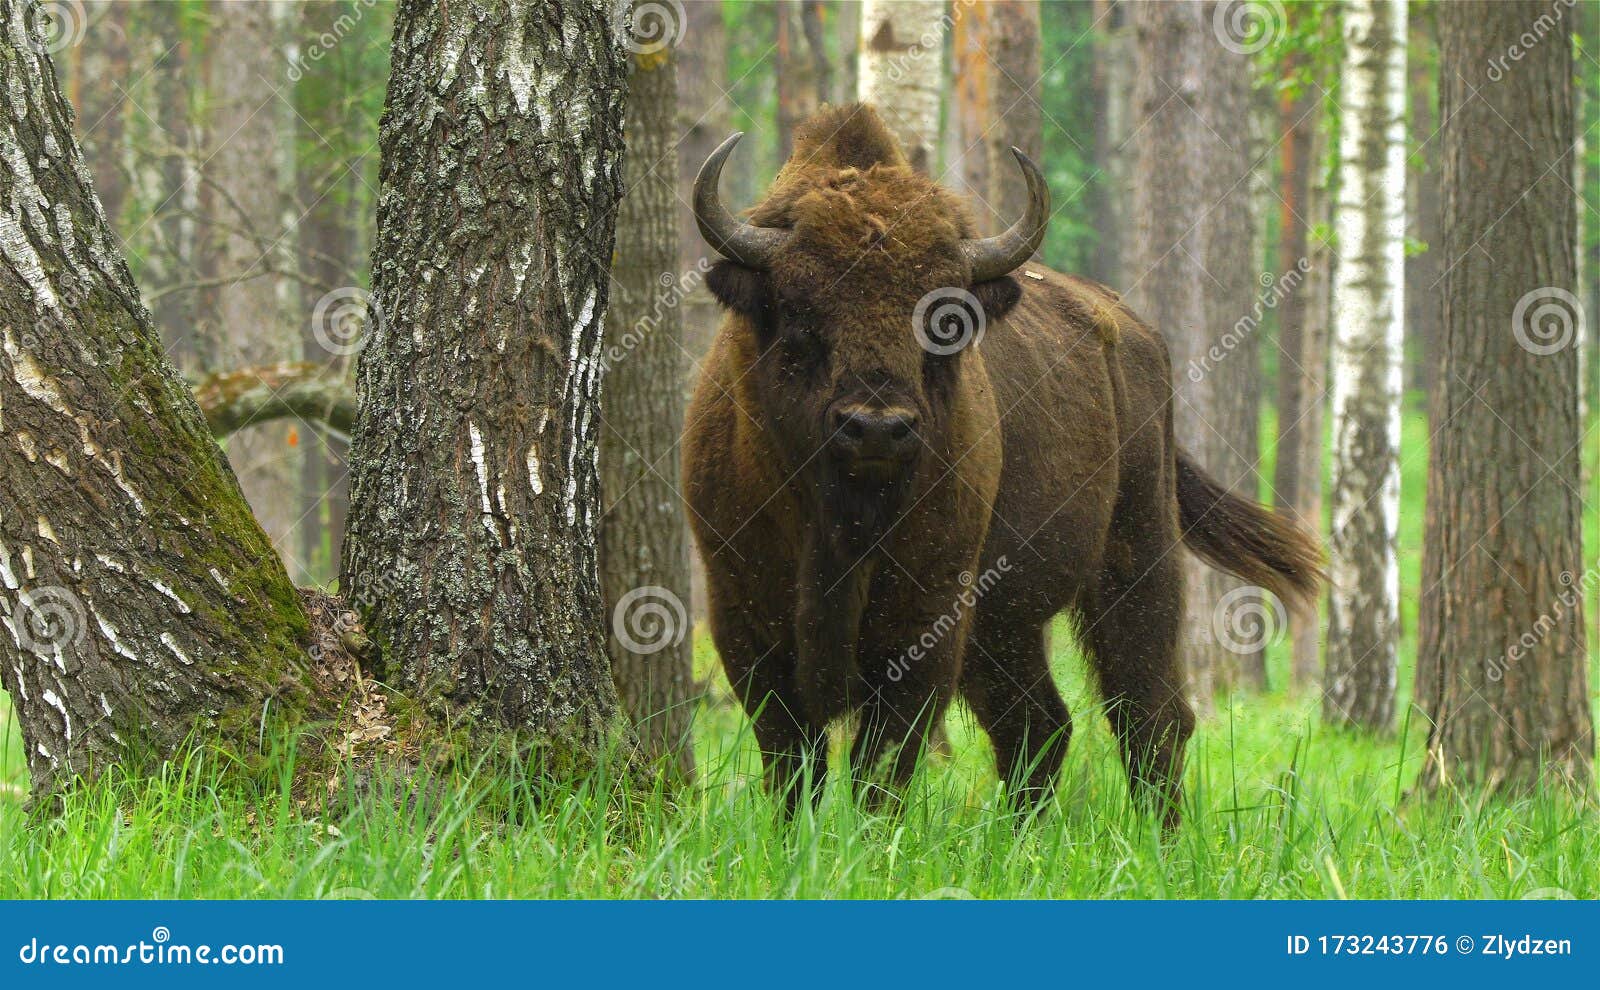 лесные животные беларуси фото и название